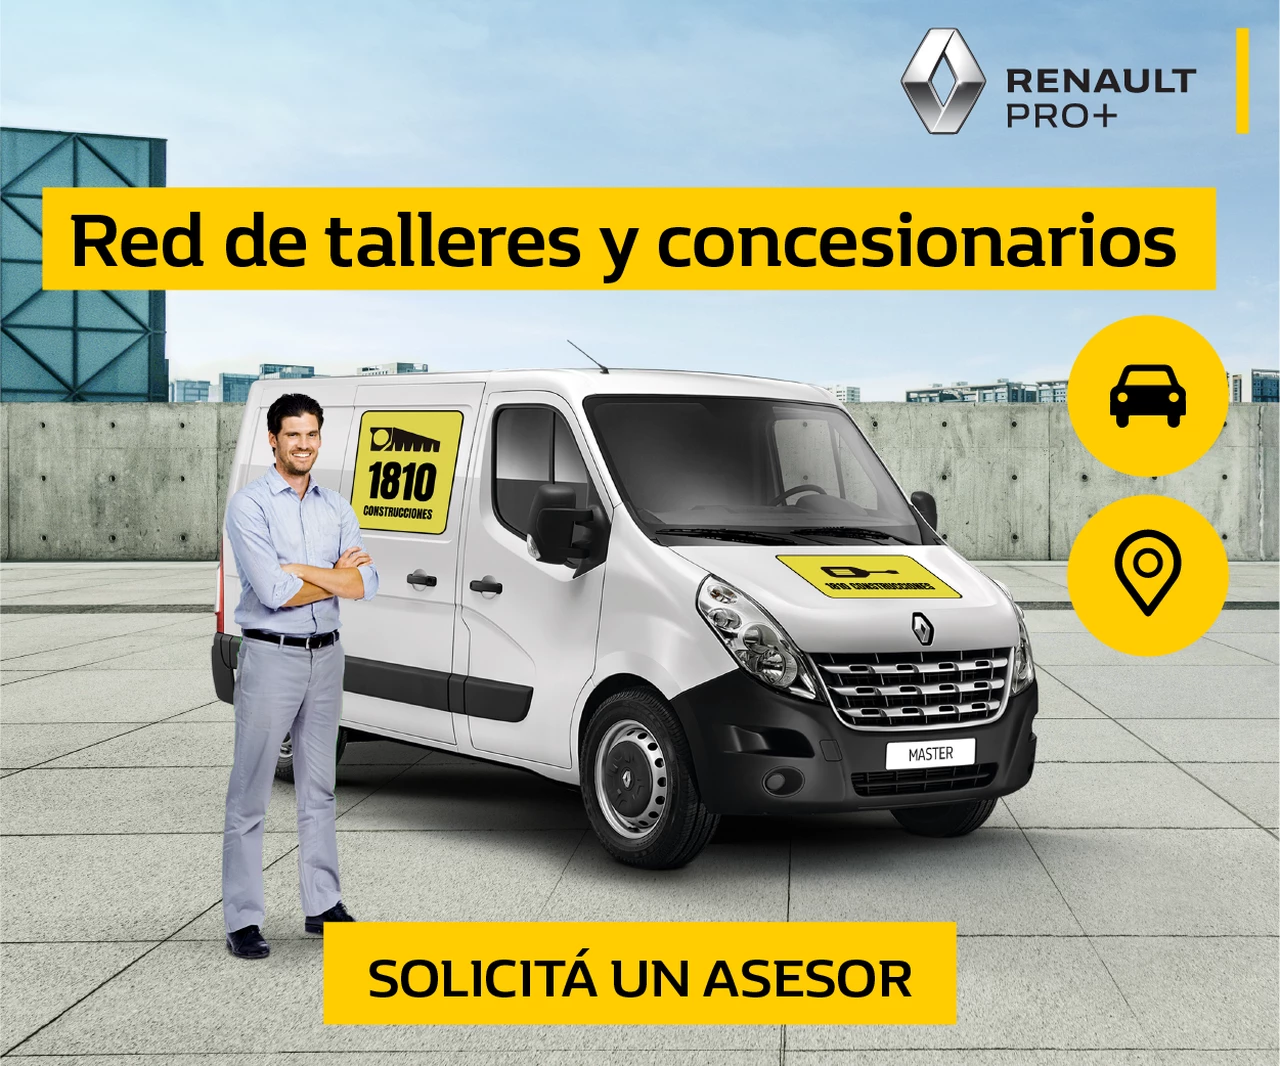 Renault PRO+, un servicio de movilidad a medida de los clientes profesionales